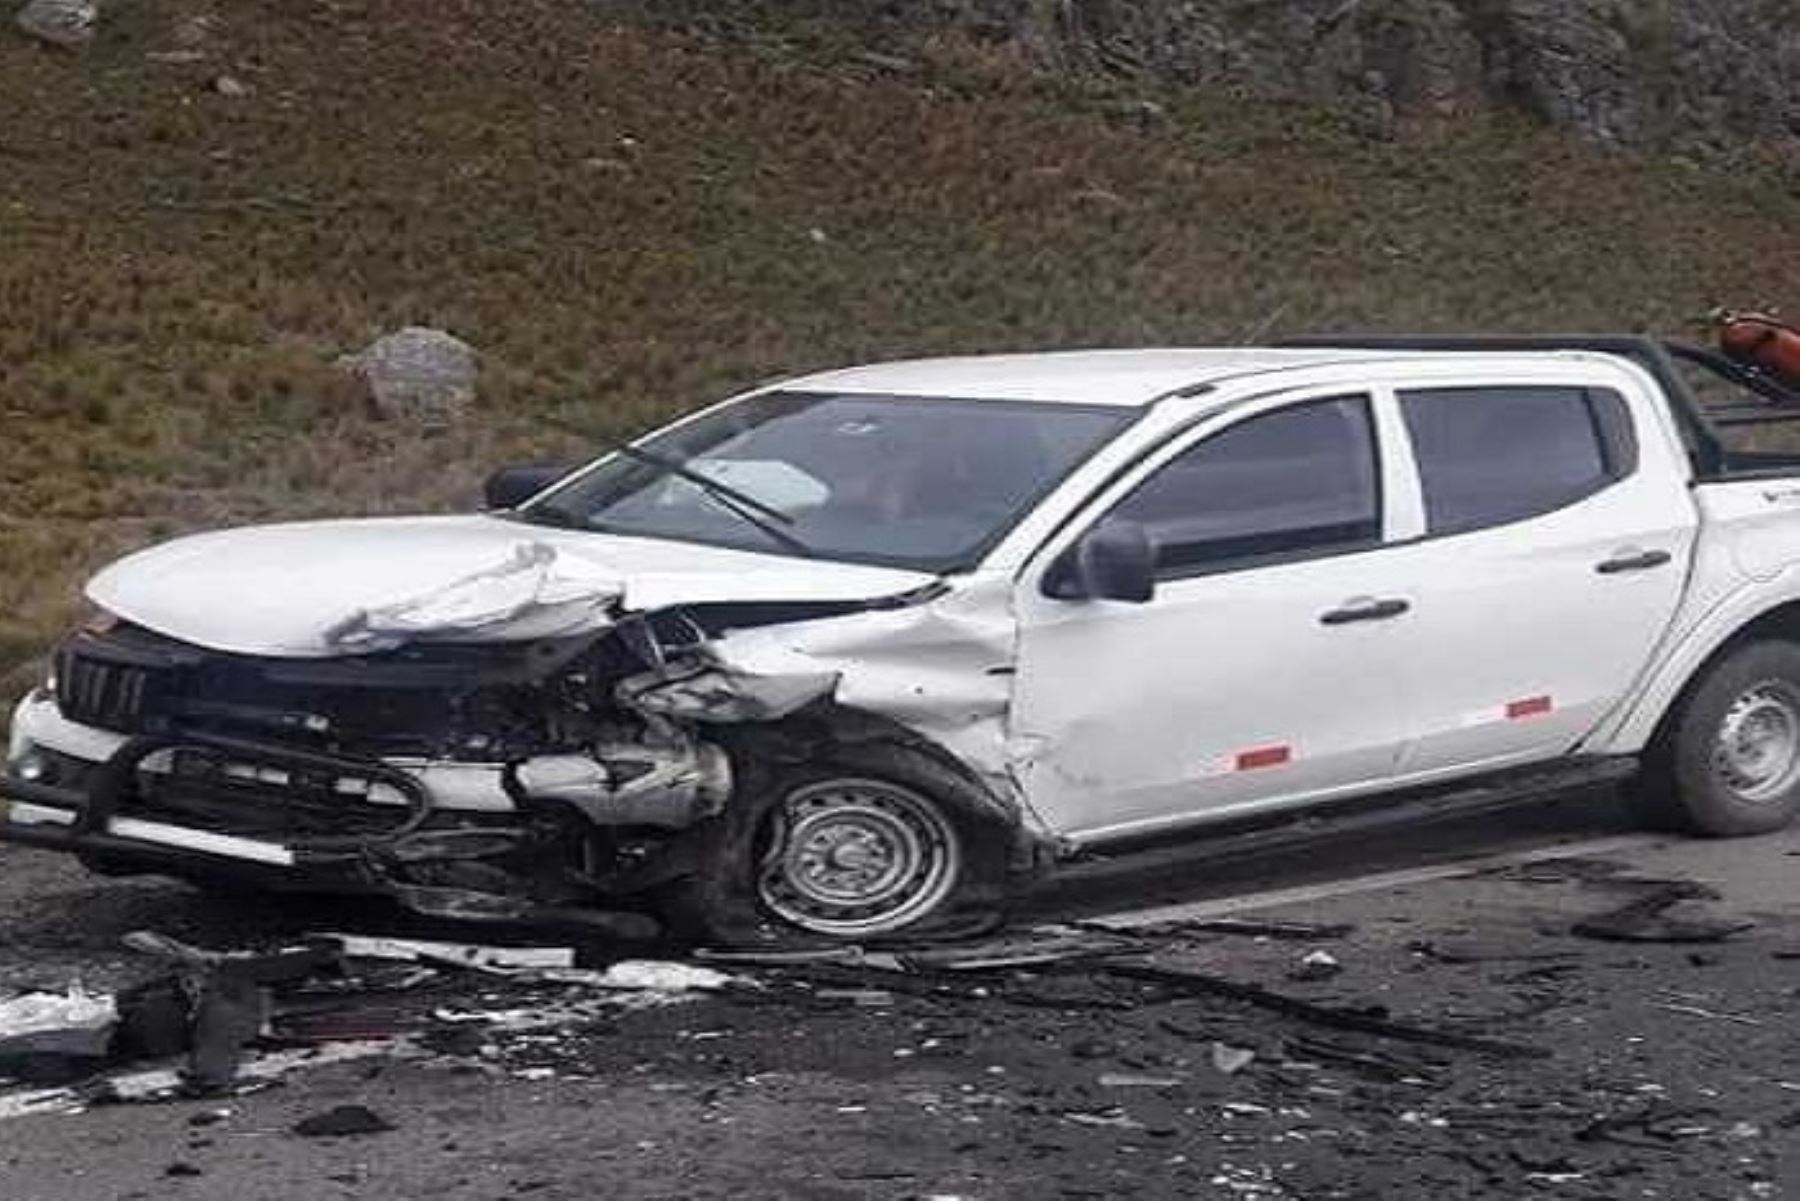 Una persona murió y otras cuatro resultaron heridas al chocar una camioneta y un auto particular a la altura del kilómetro 516 de la vía Pativilca – Huaraz, en la región Áncash; informó la Policía local.